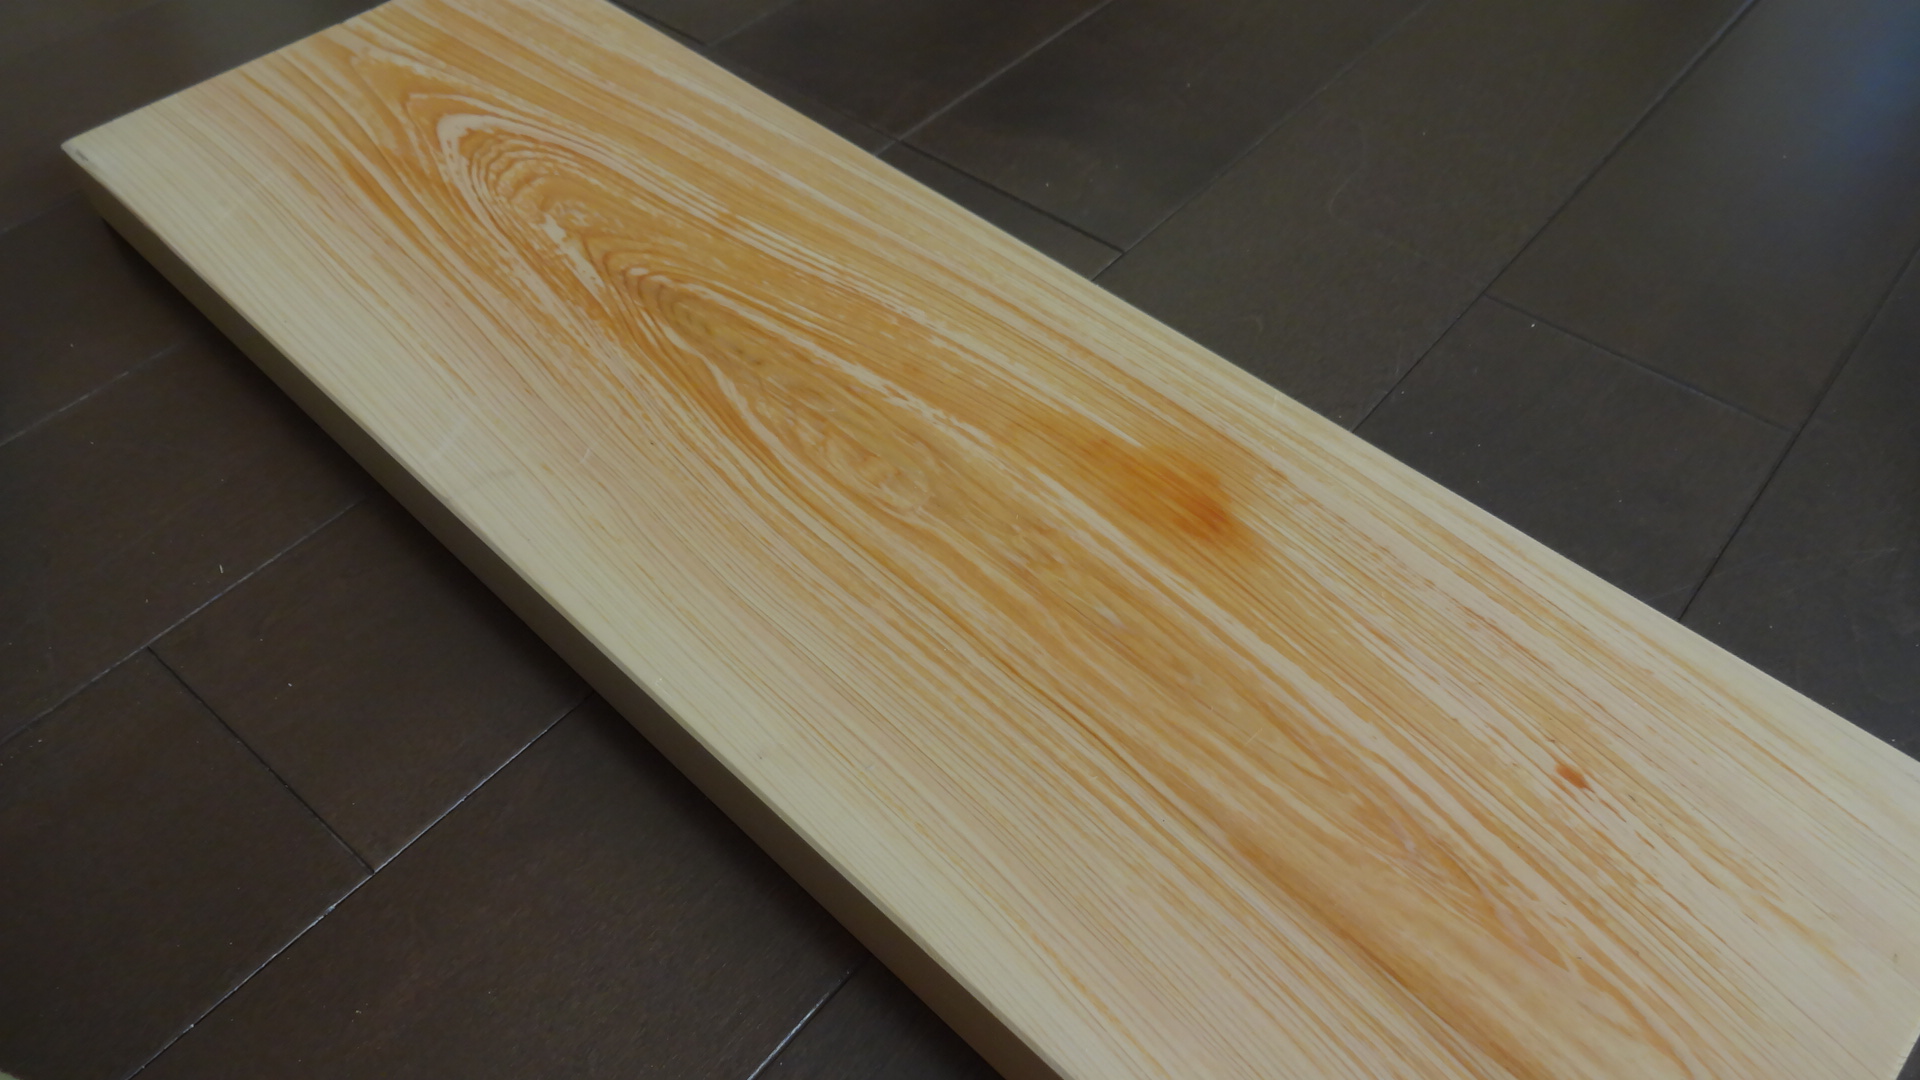 美吉野キッチンのひのきまな板です。シンクに渡せるロングタイプ。良材の証であるヒノキオイルが出ています。